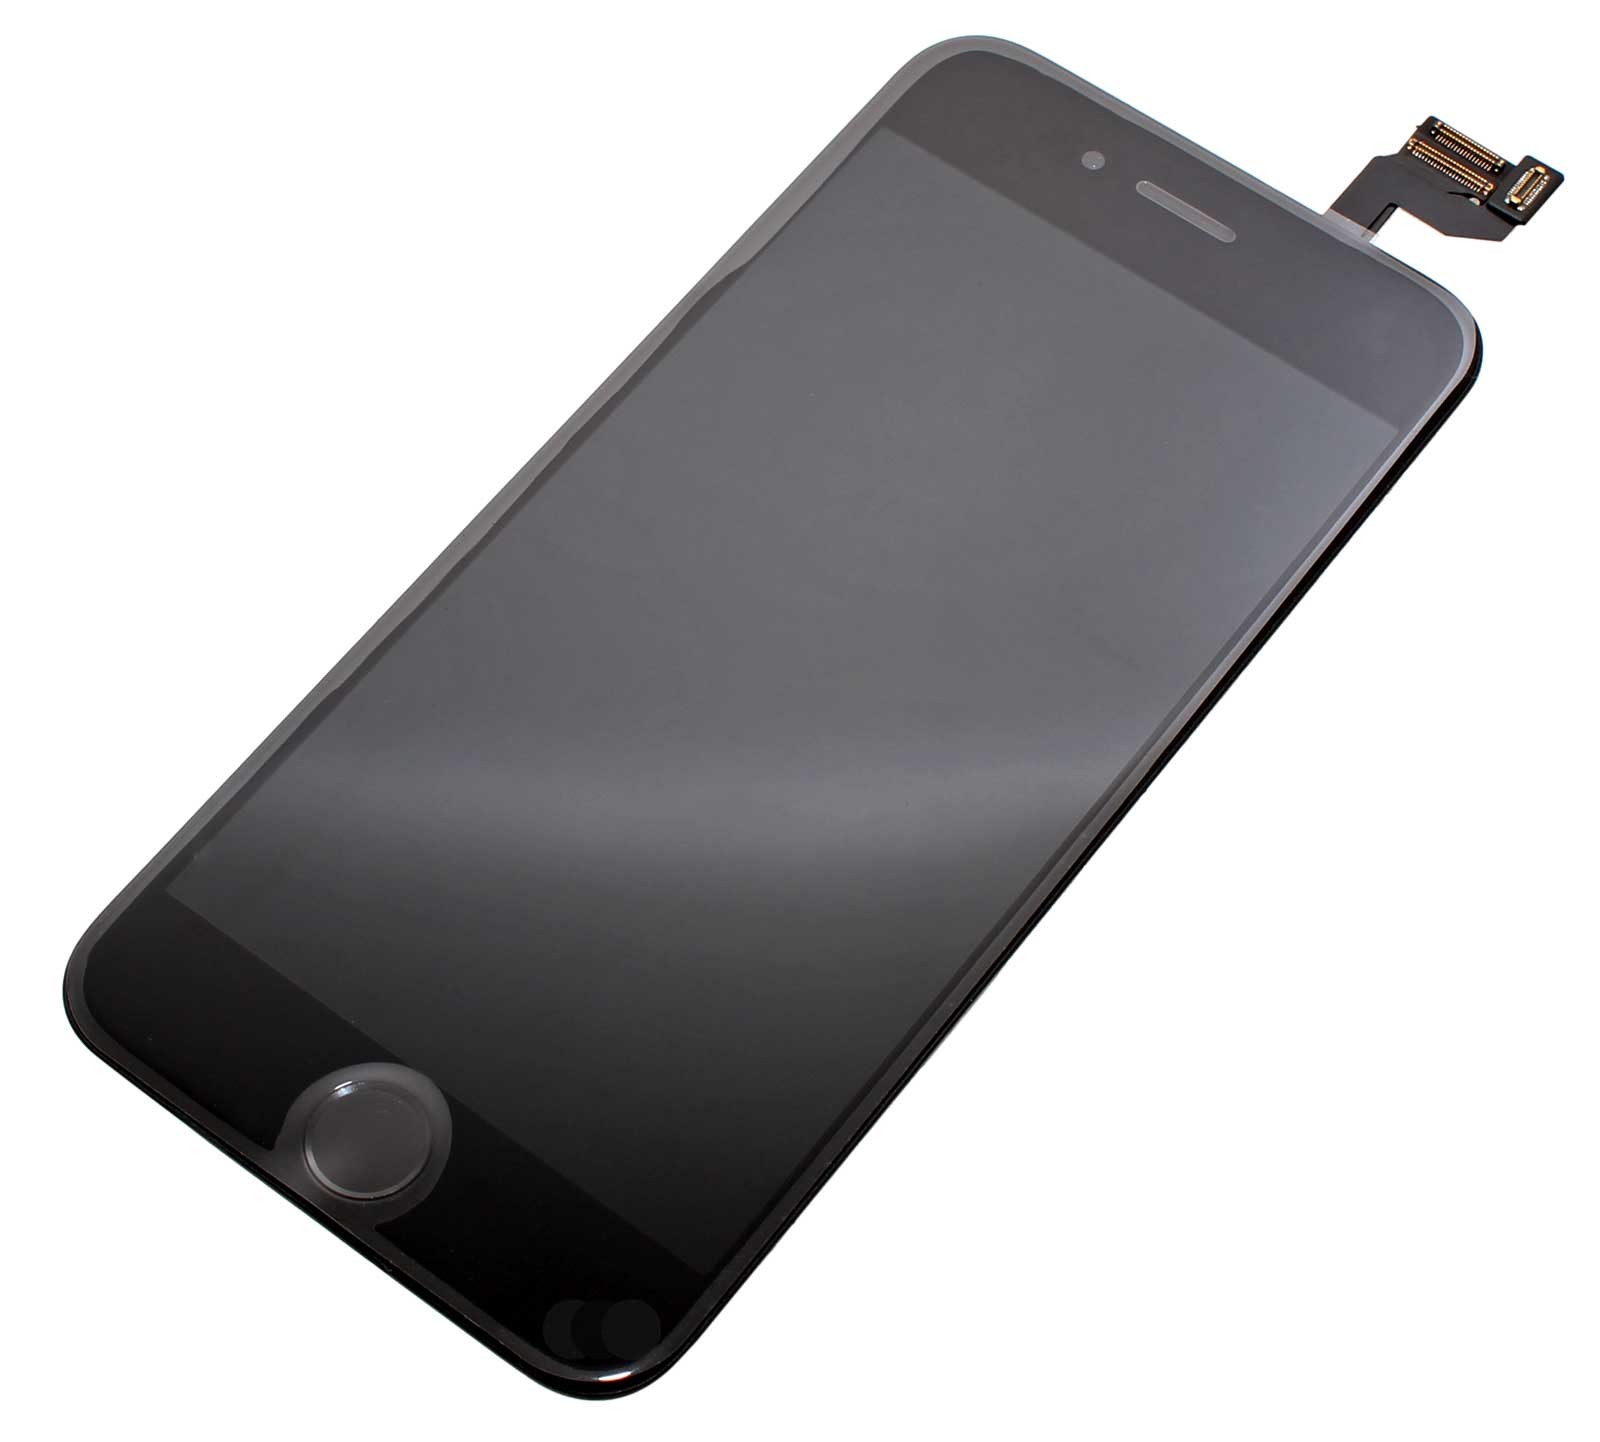 LCD Retina Display Bildschirm für iPhone 6S mit Glas Scheibe in schwarz, das Display ist vormontiert mit Front Kamera, Licht Sensor, Hörmuschel, Mikrofon und Home Button mit Flex Kabel